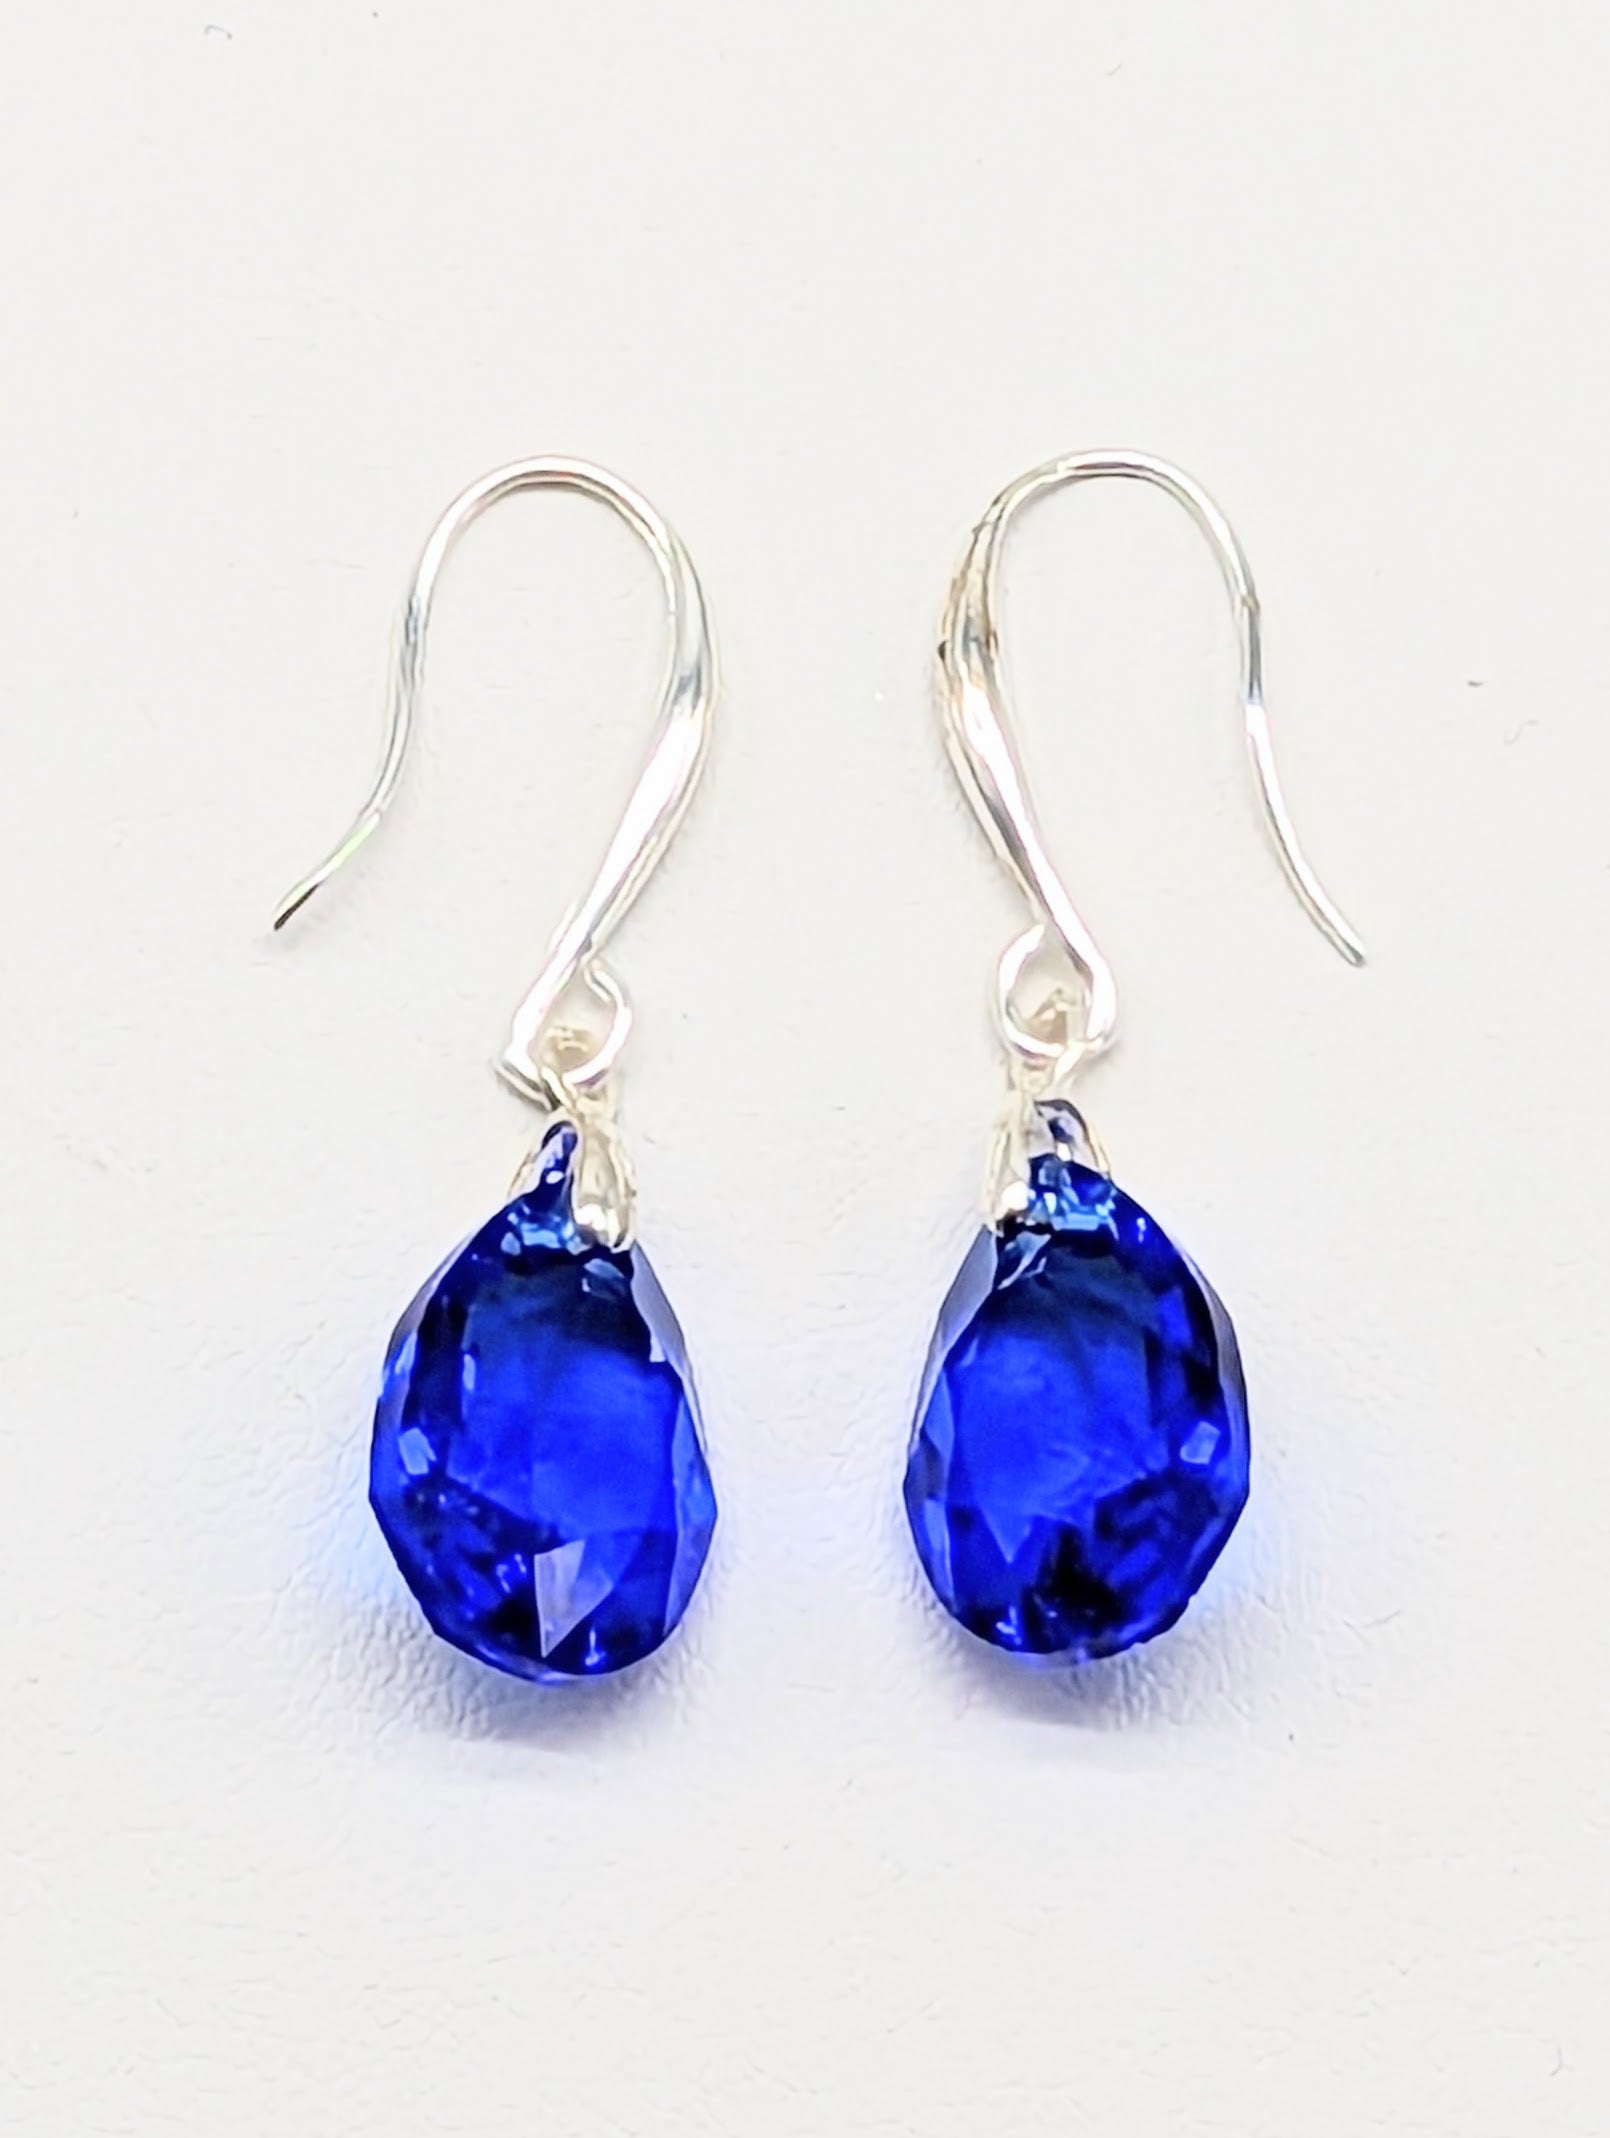 "Majestic Blue" Austrian Crystal Earrings on Sterling Silver